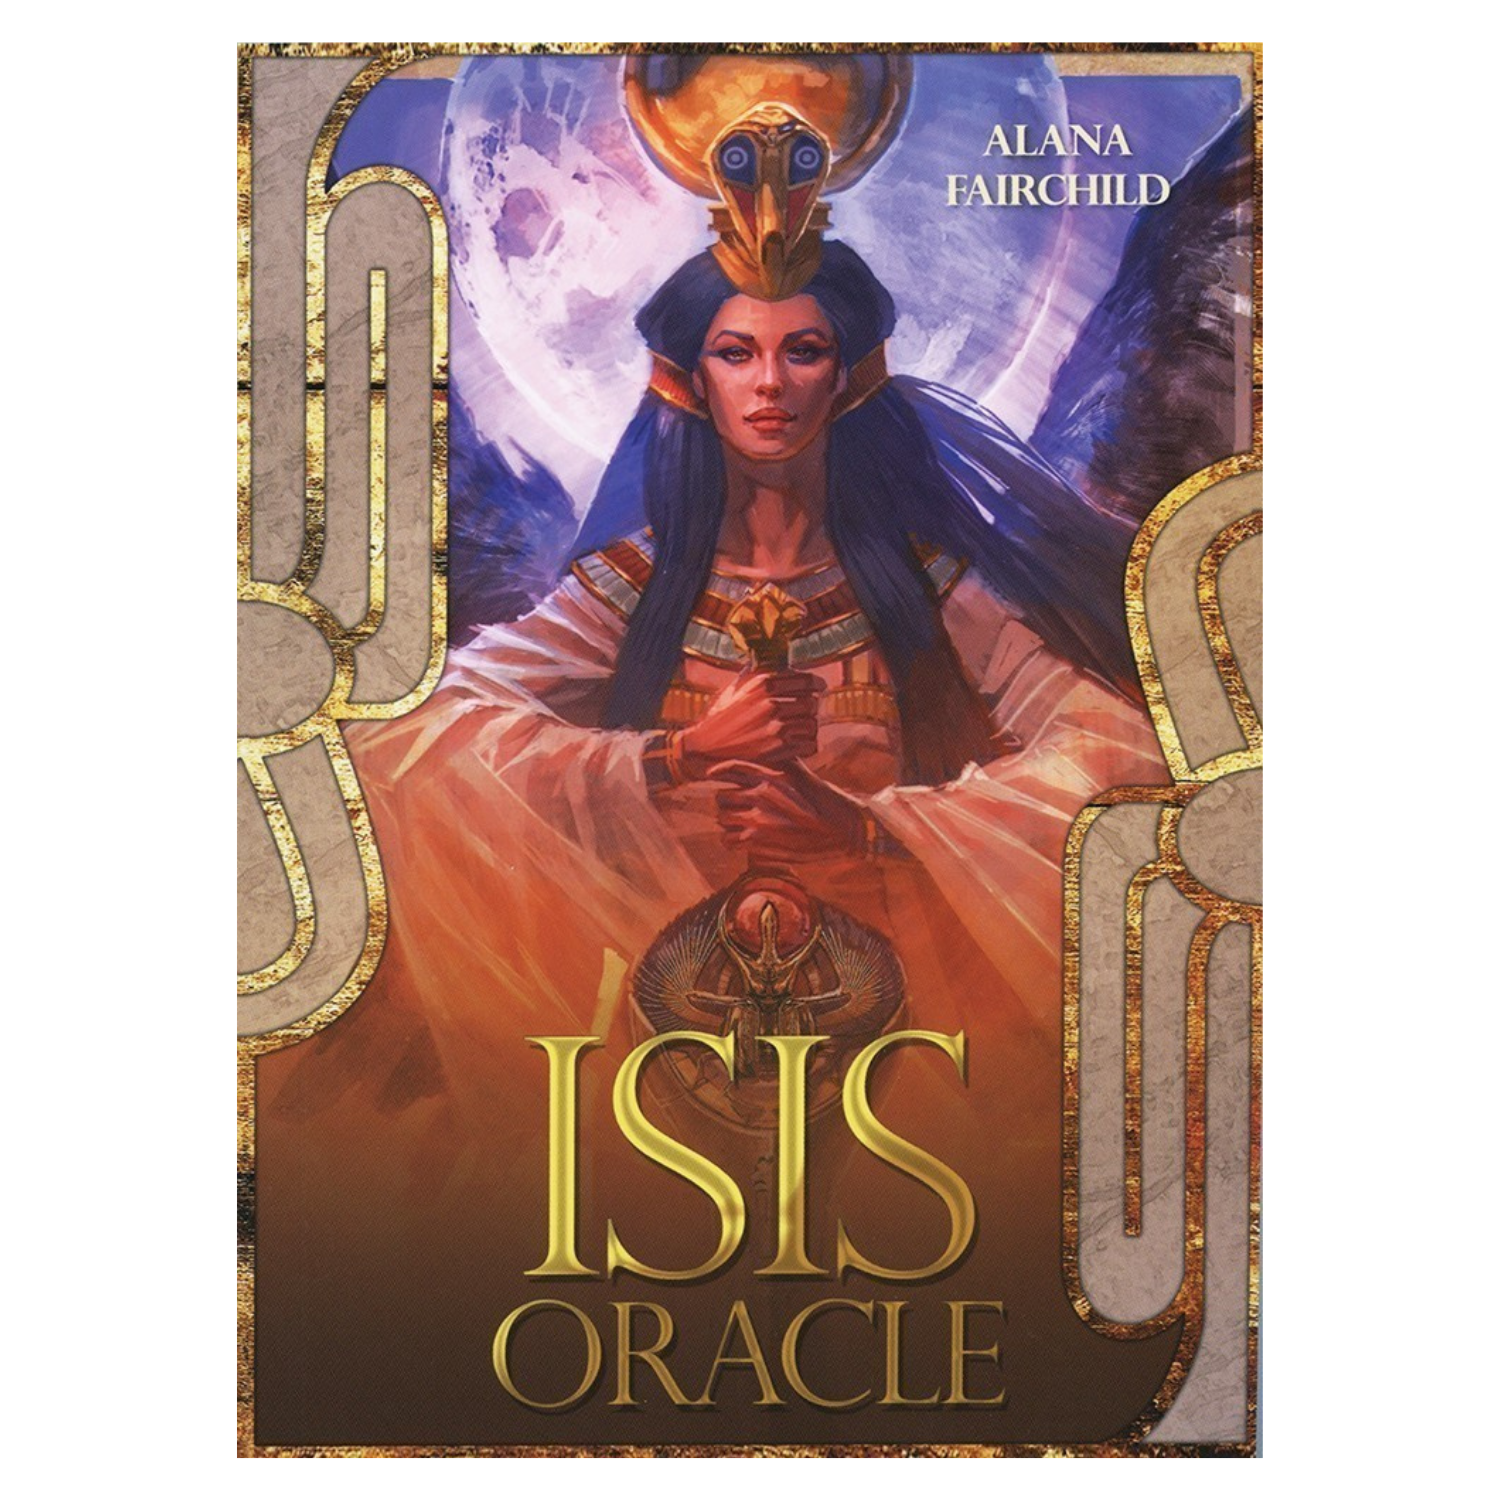 Isis Oracle